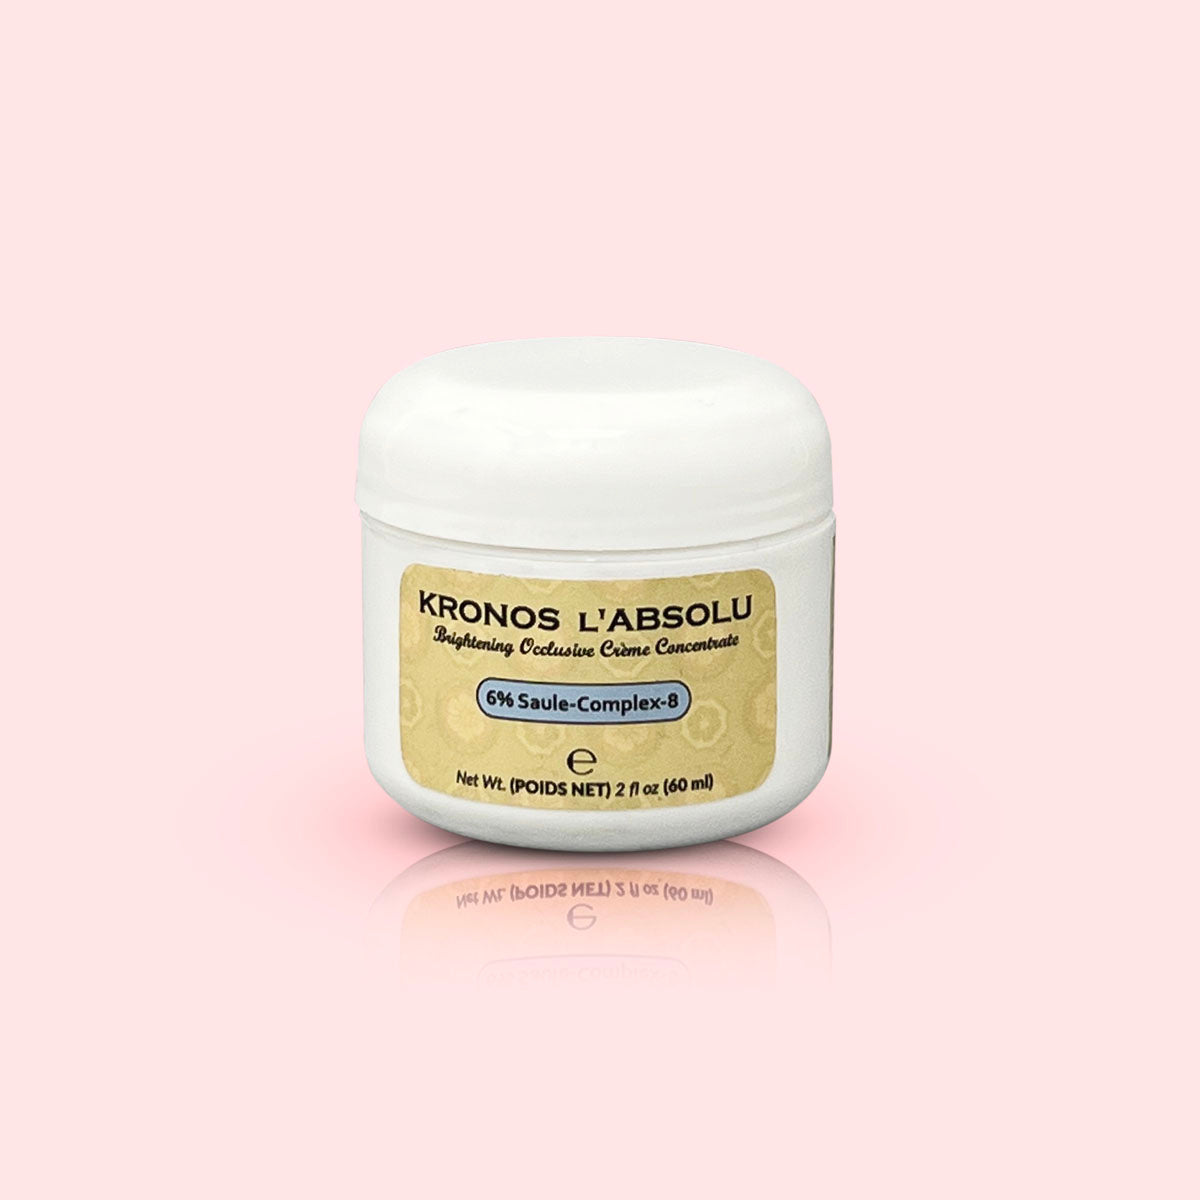 Kronos L' Absolu 6% Saule-Complex-8 Evening Cream